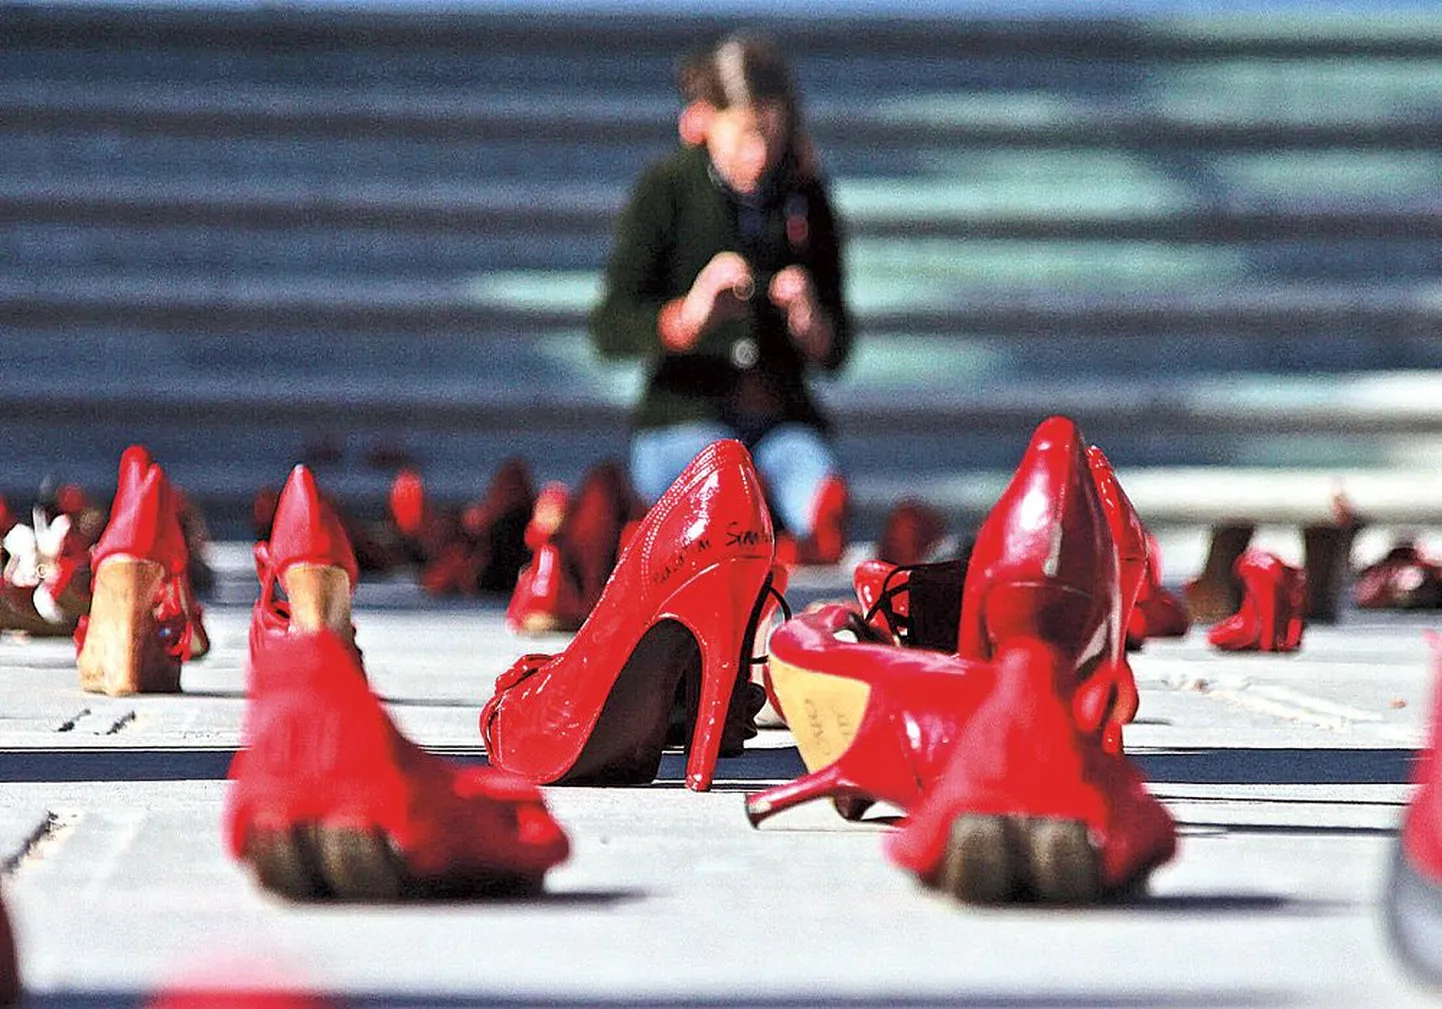 В прошлом году перед прокуратурой города Сьюдад-Хуарес (Мексика) появилась инсталляция из сотен красных туфелек, символизирующая убитых женщин.